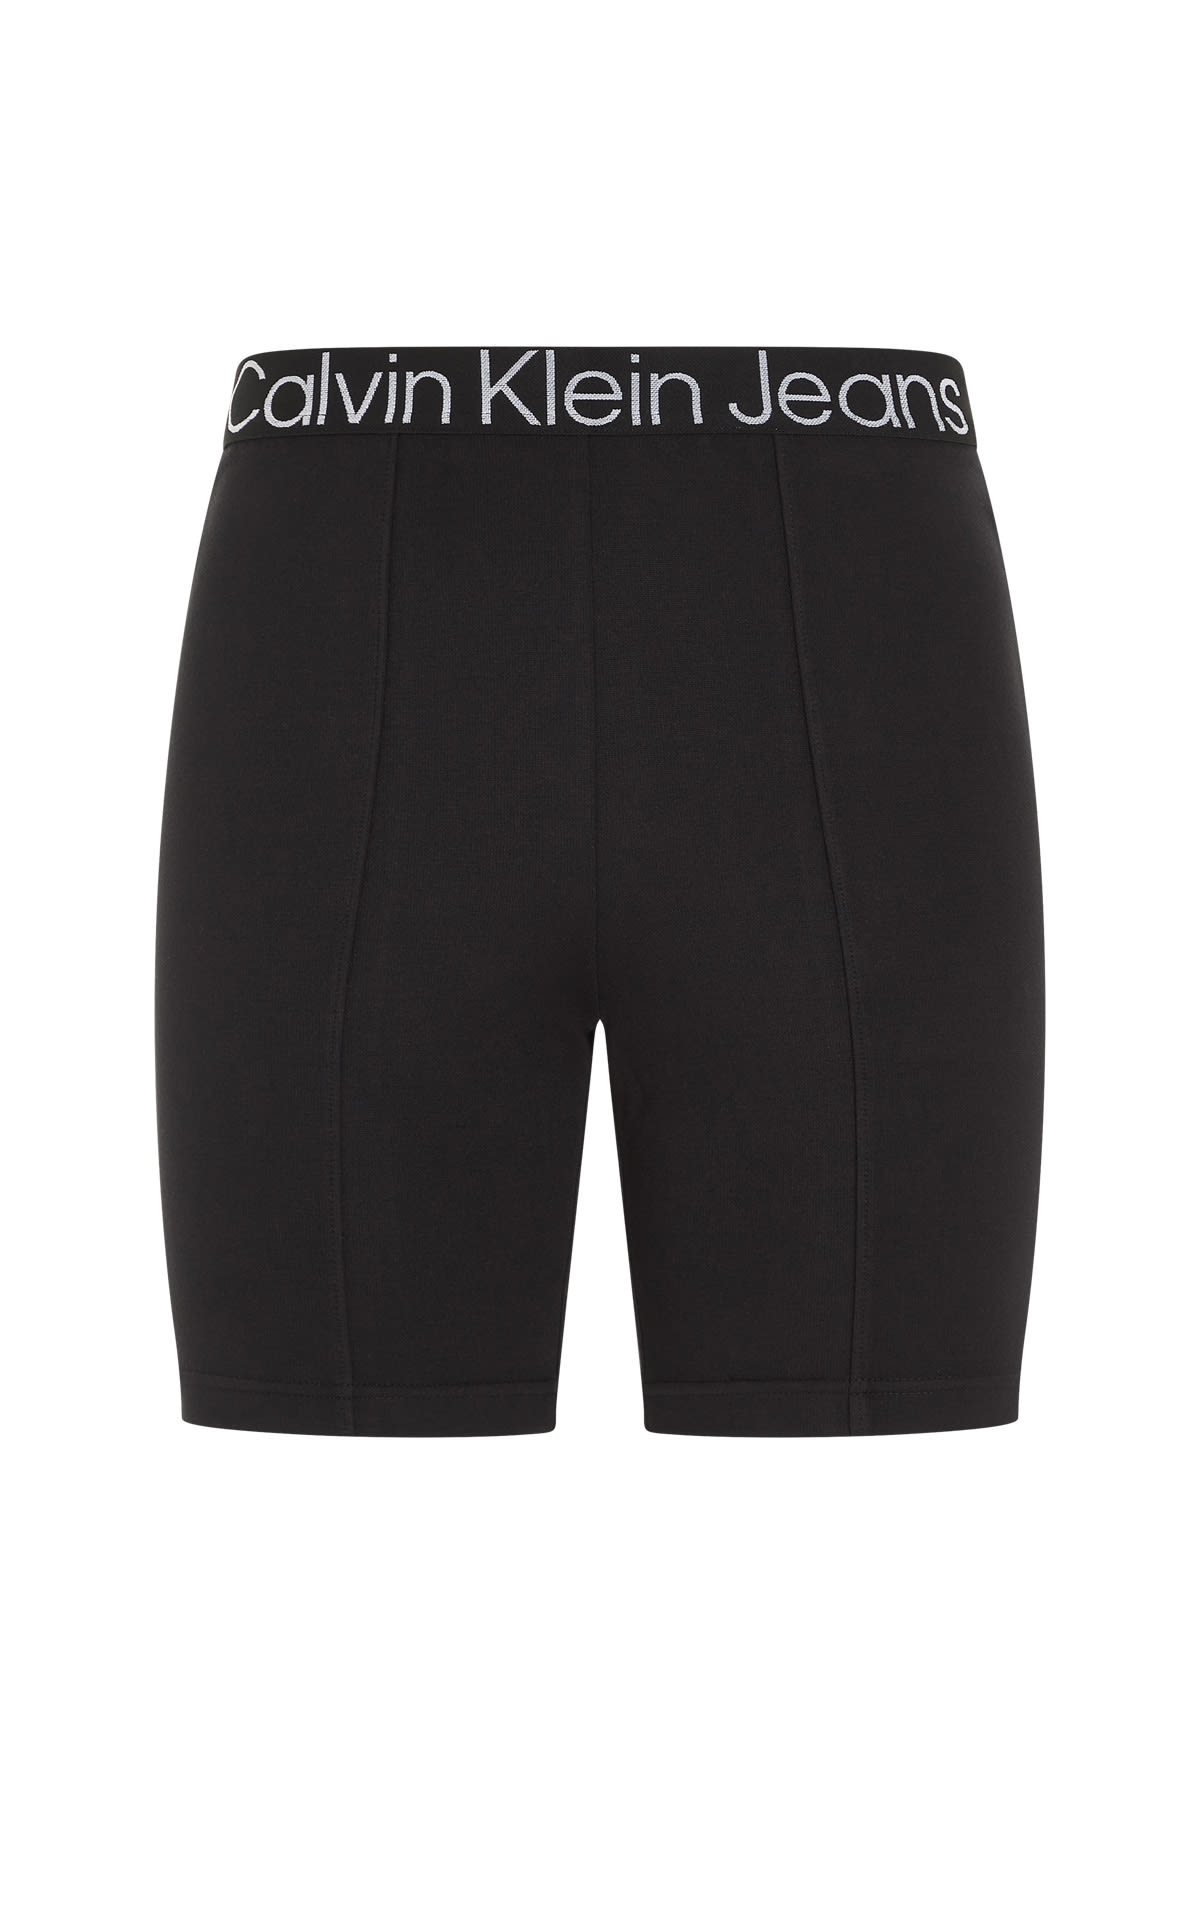 Shorts negros de ciclista CK Jeans